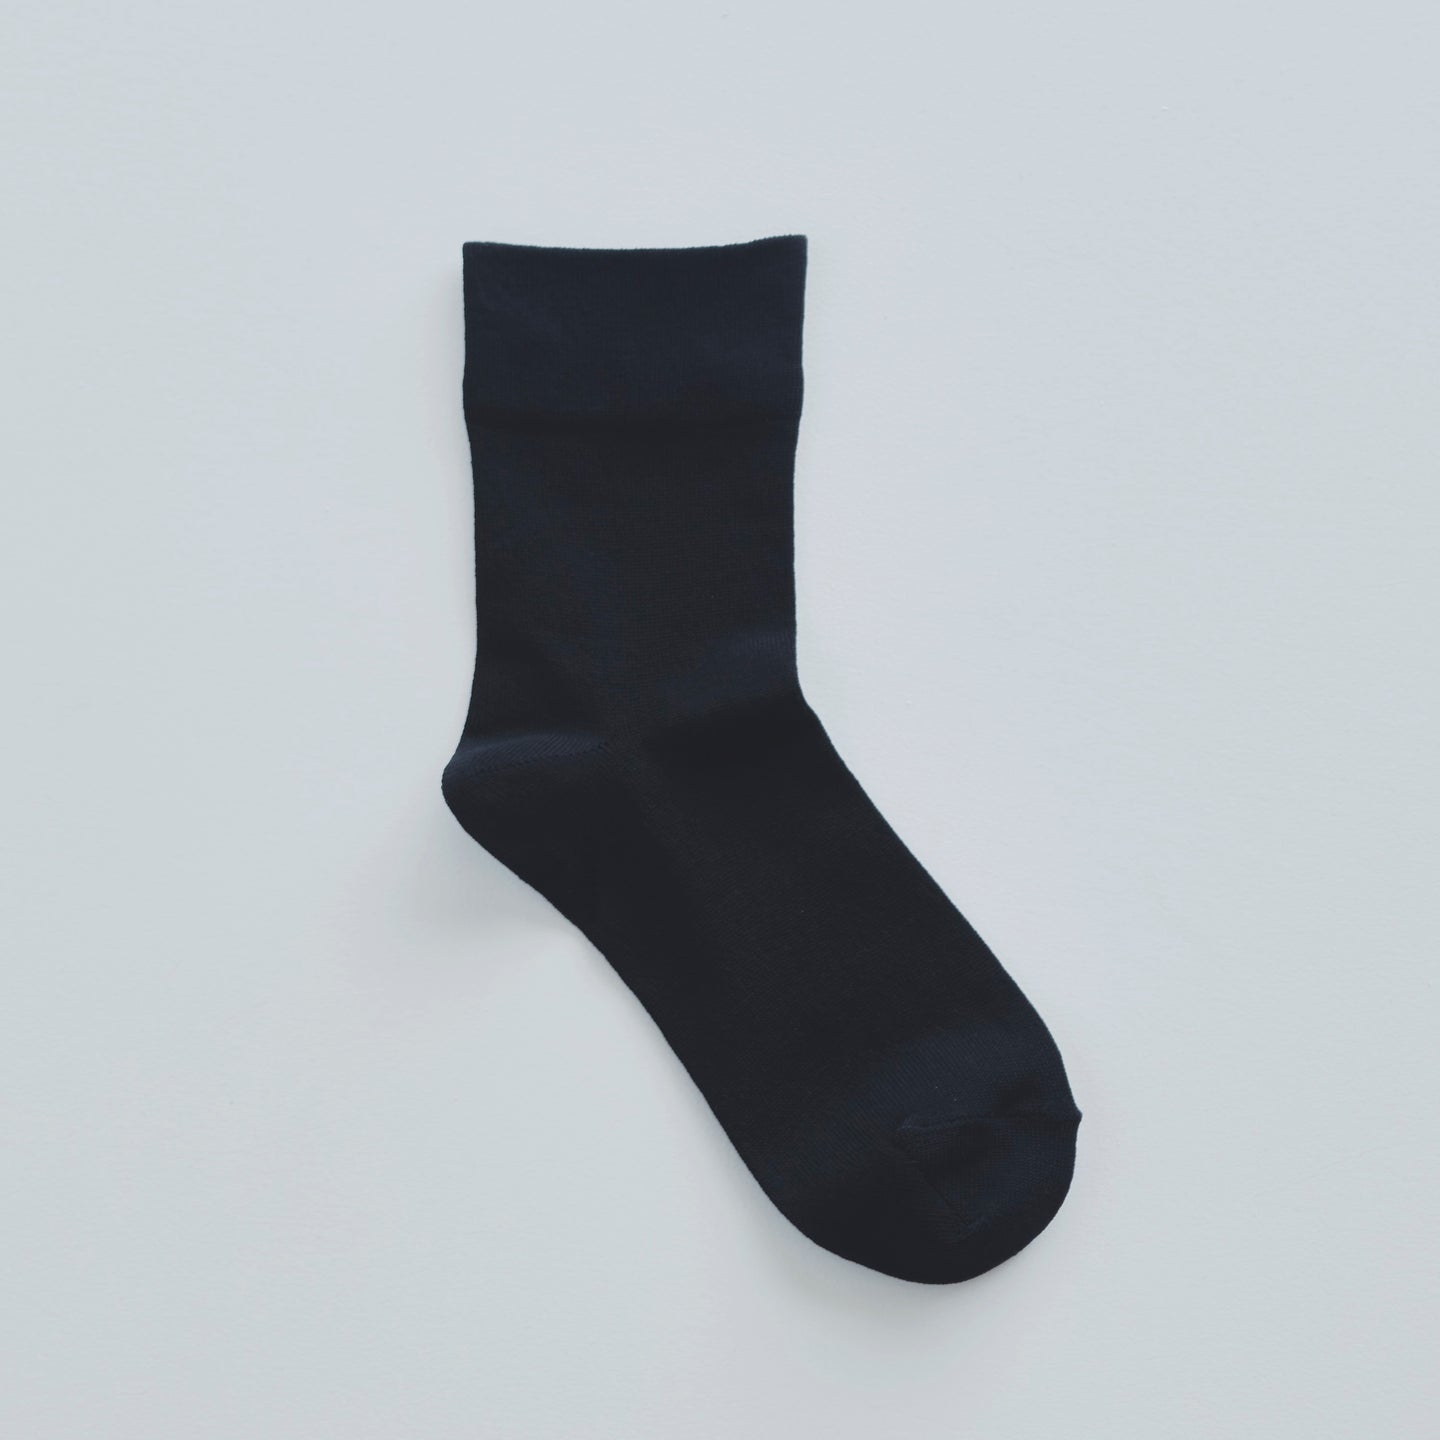 ice socks / unisex